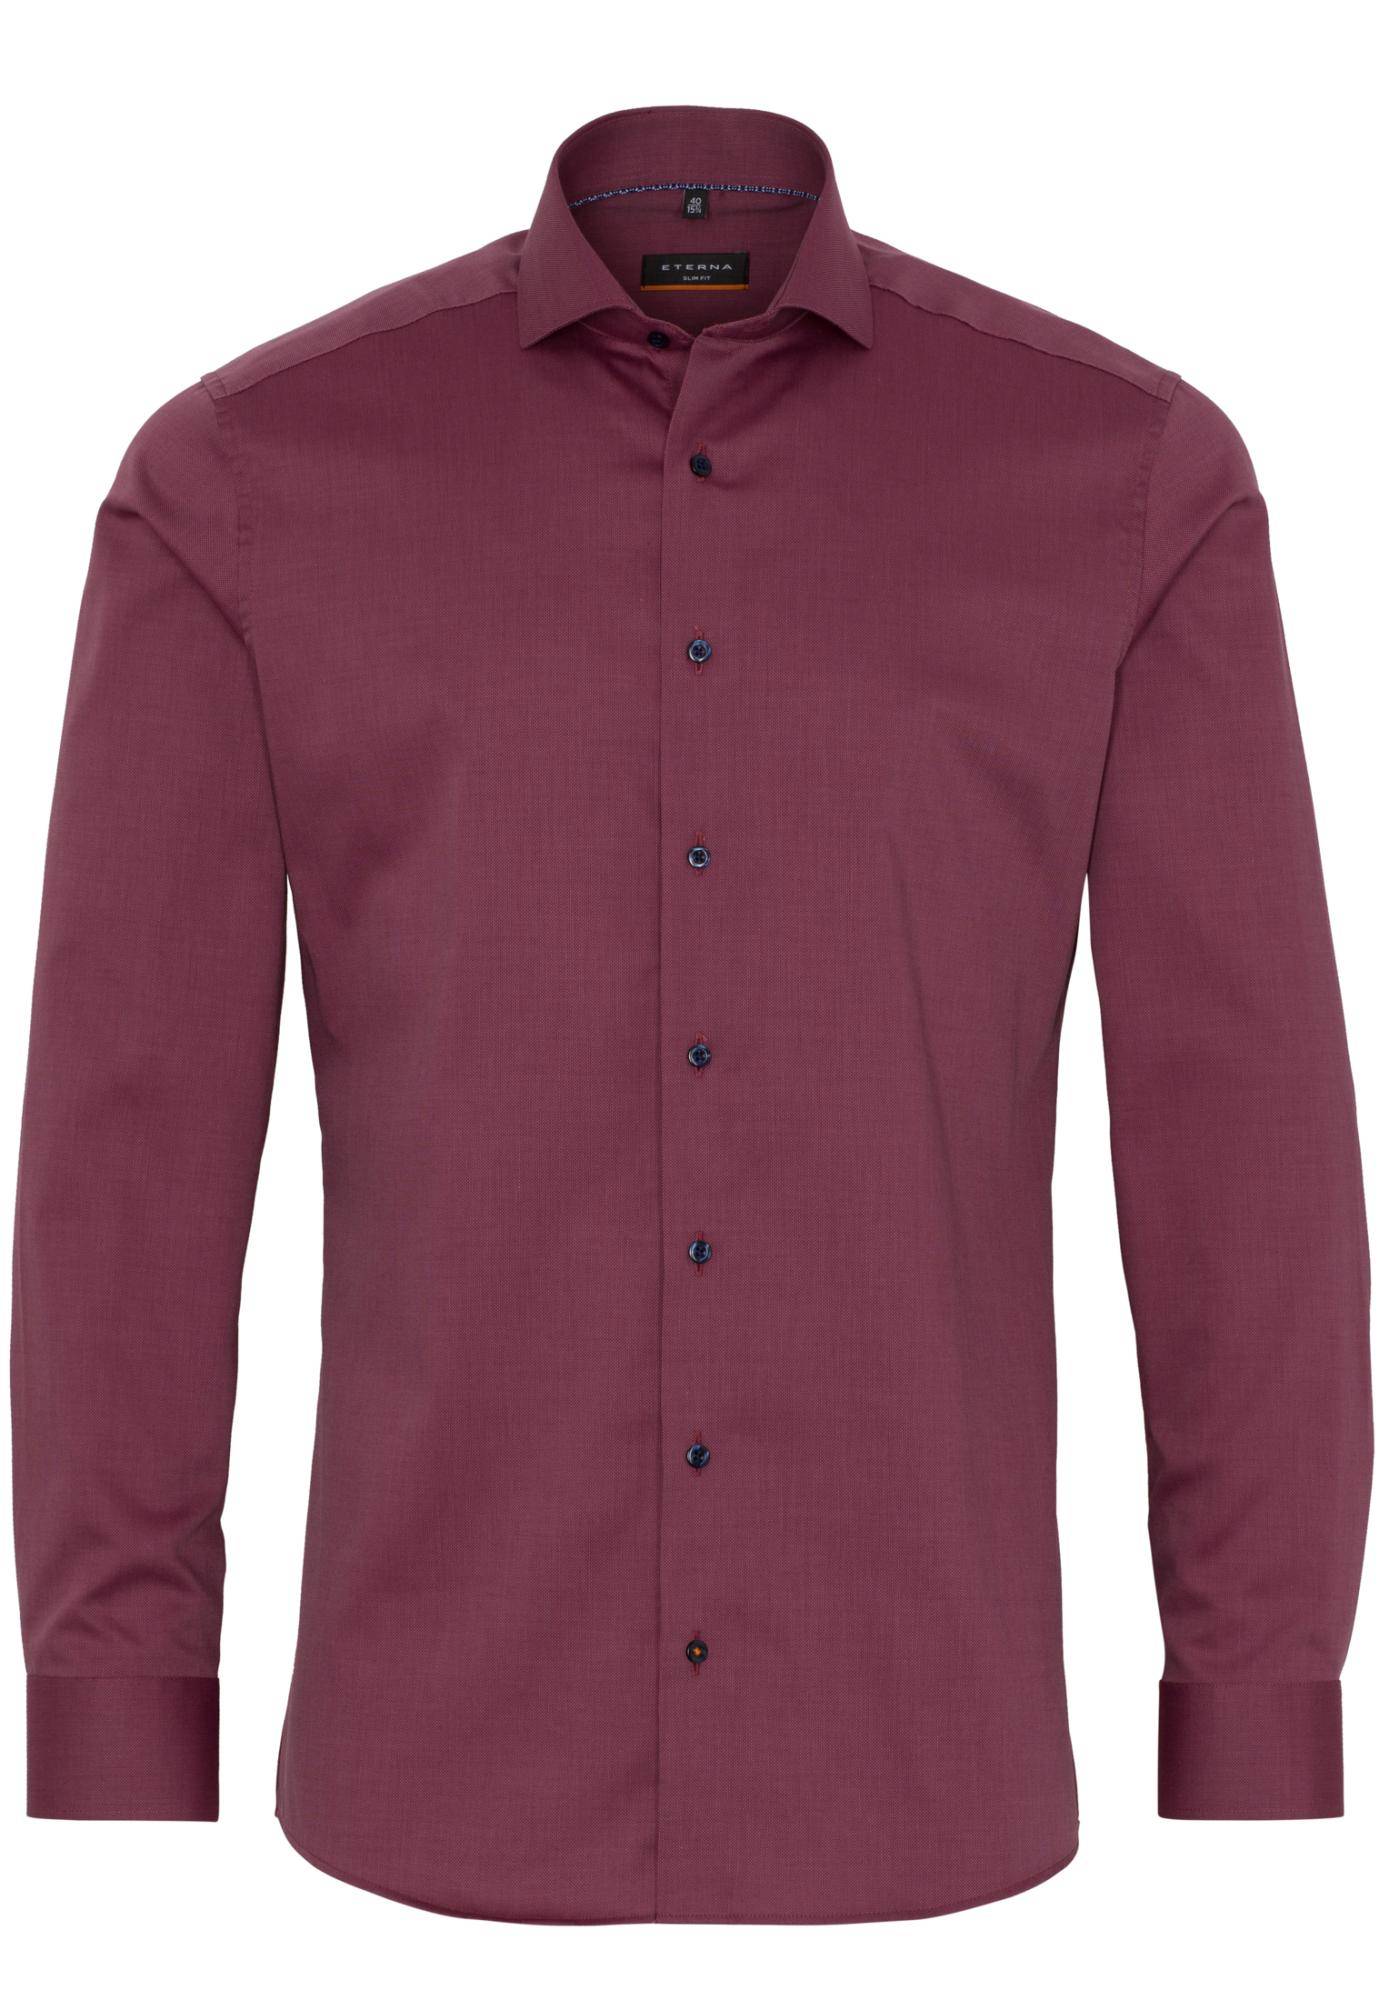 Мужская рубашка ETERNA, бордовая, цвет бордовый, размер 44 - фото 1